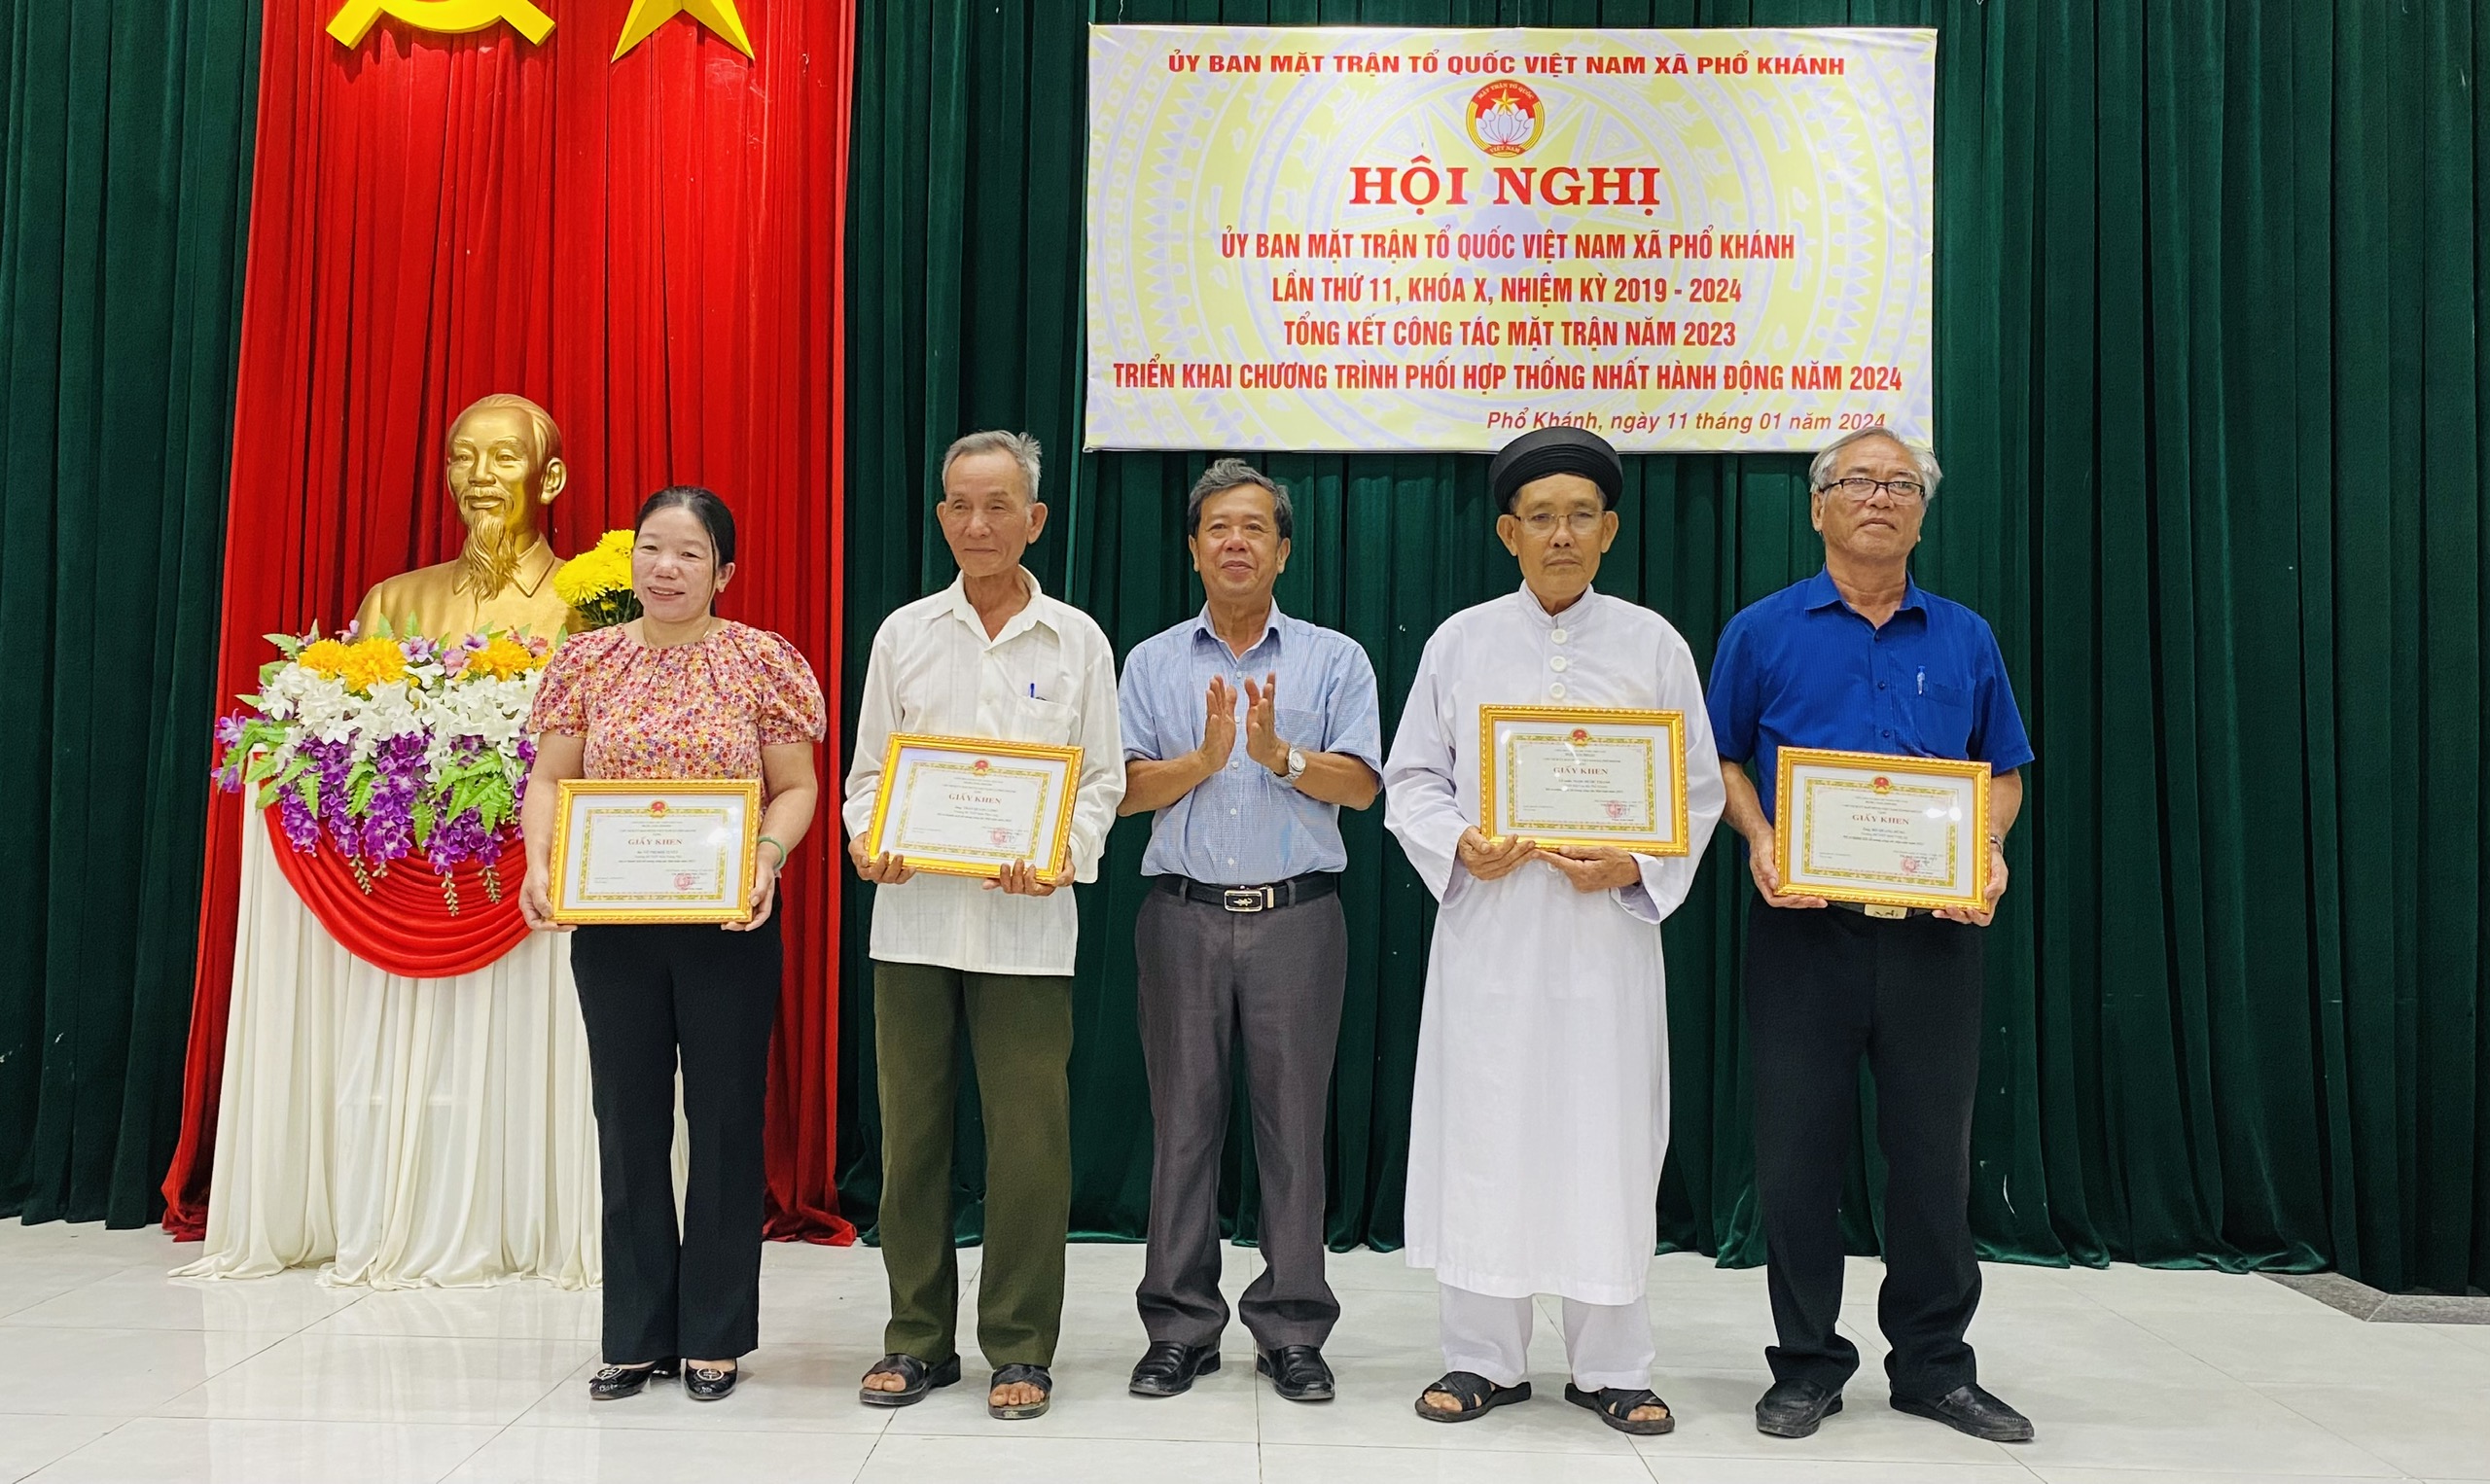 Uỷ ban Mặt trận Tổ quốc Việt Nam xã Phổ Khánh tổng kết công tác Mặt trận năm 2023